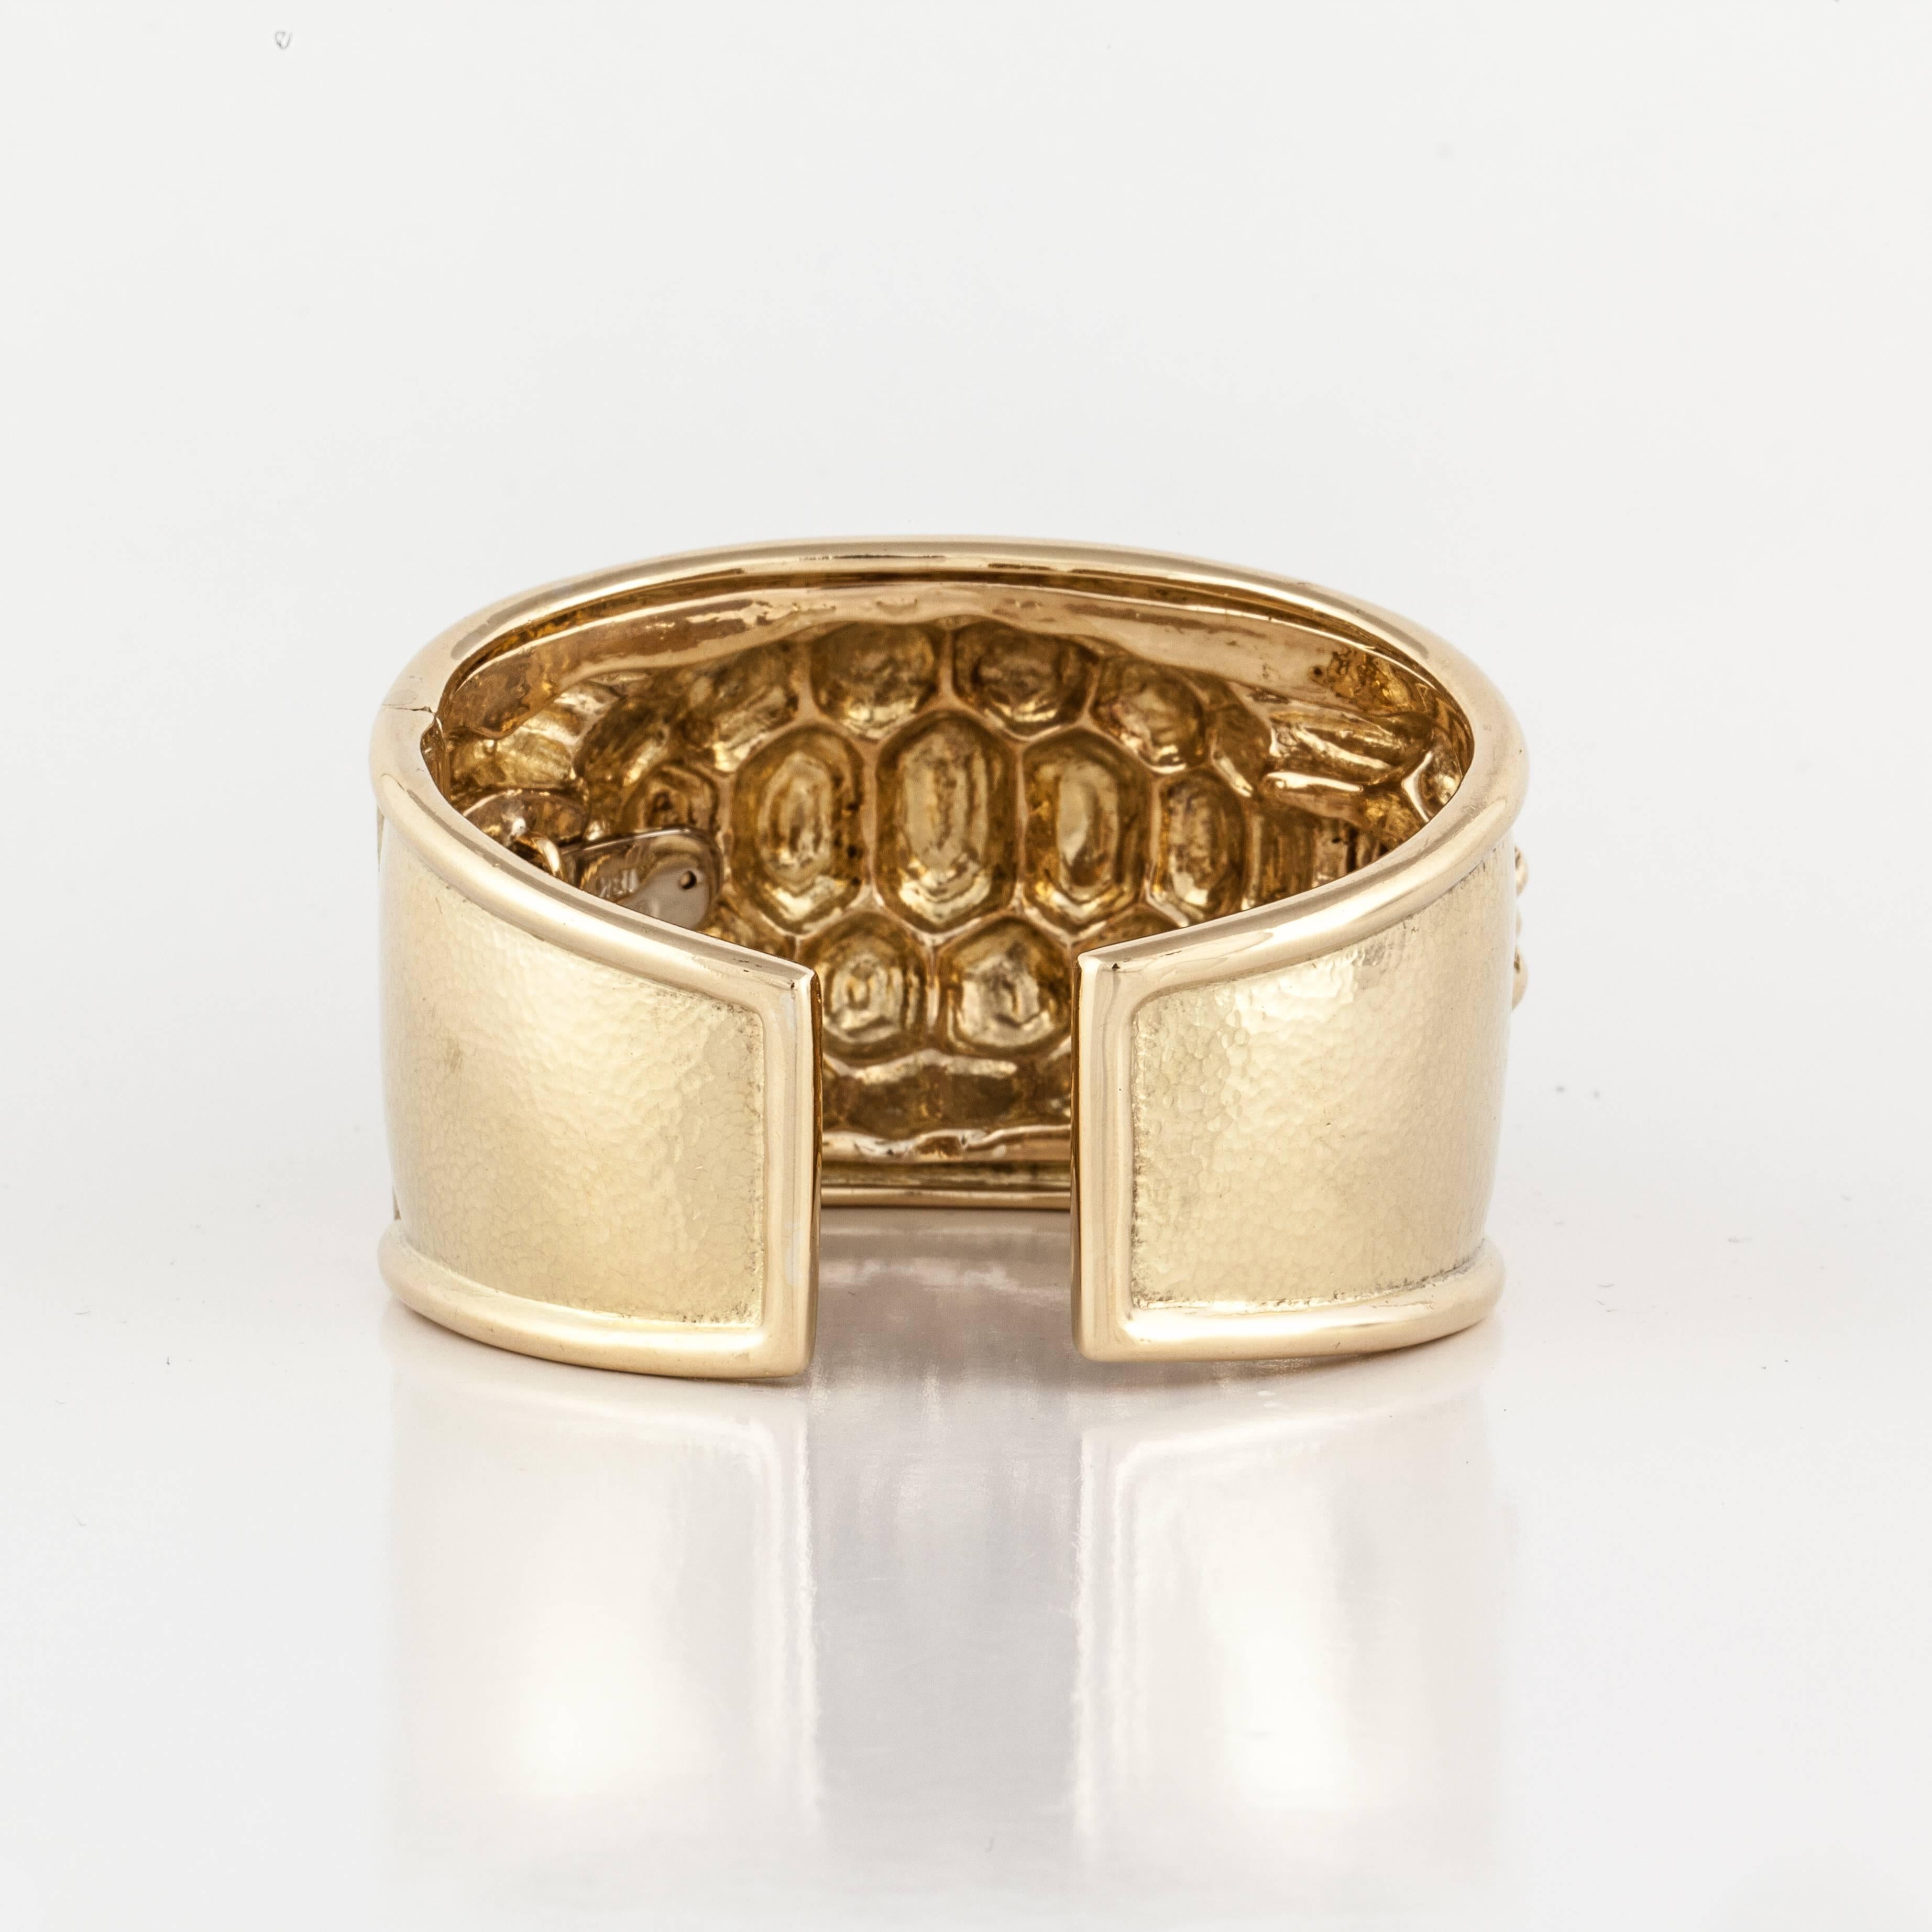 David Webb turtle cuff bracelet in 18K yellow gold marked 